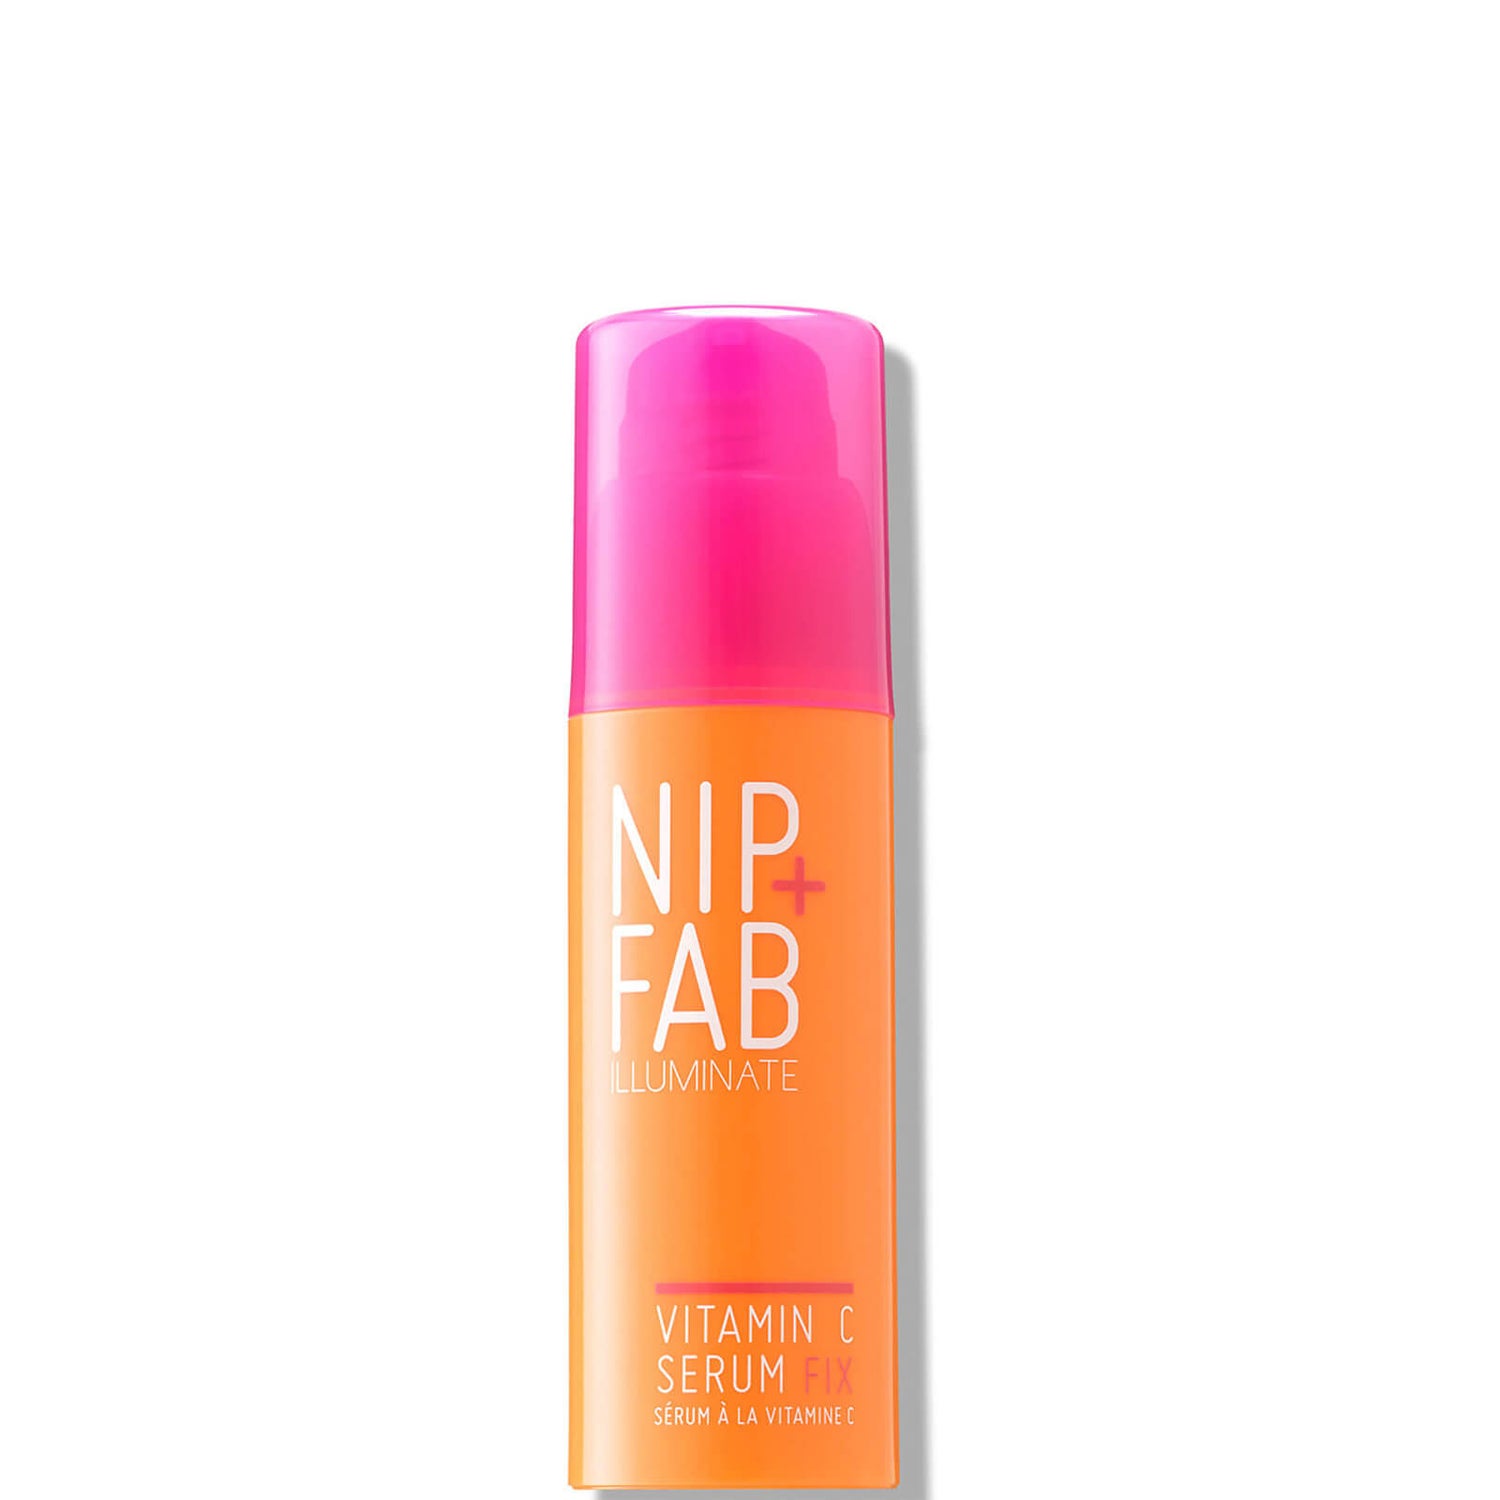 NIP+FAB Vitamin C Fix Serum 50ml